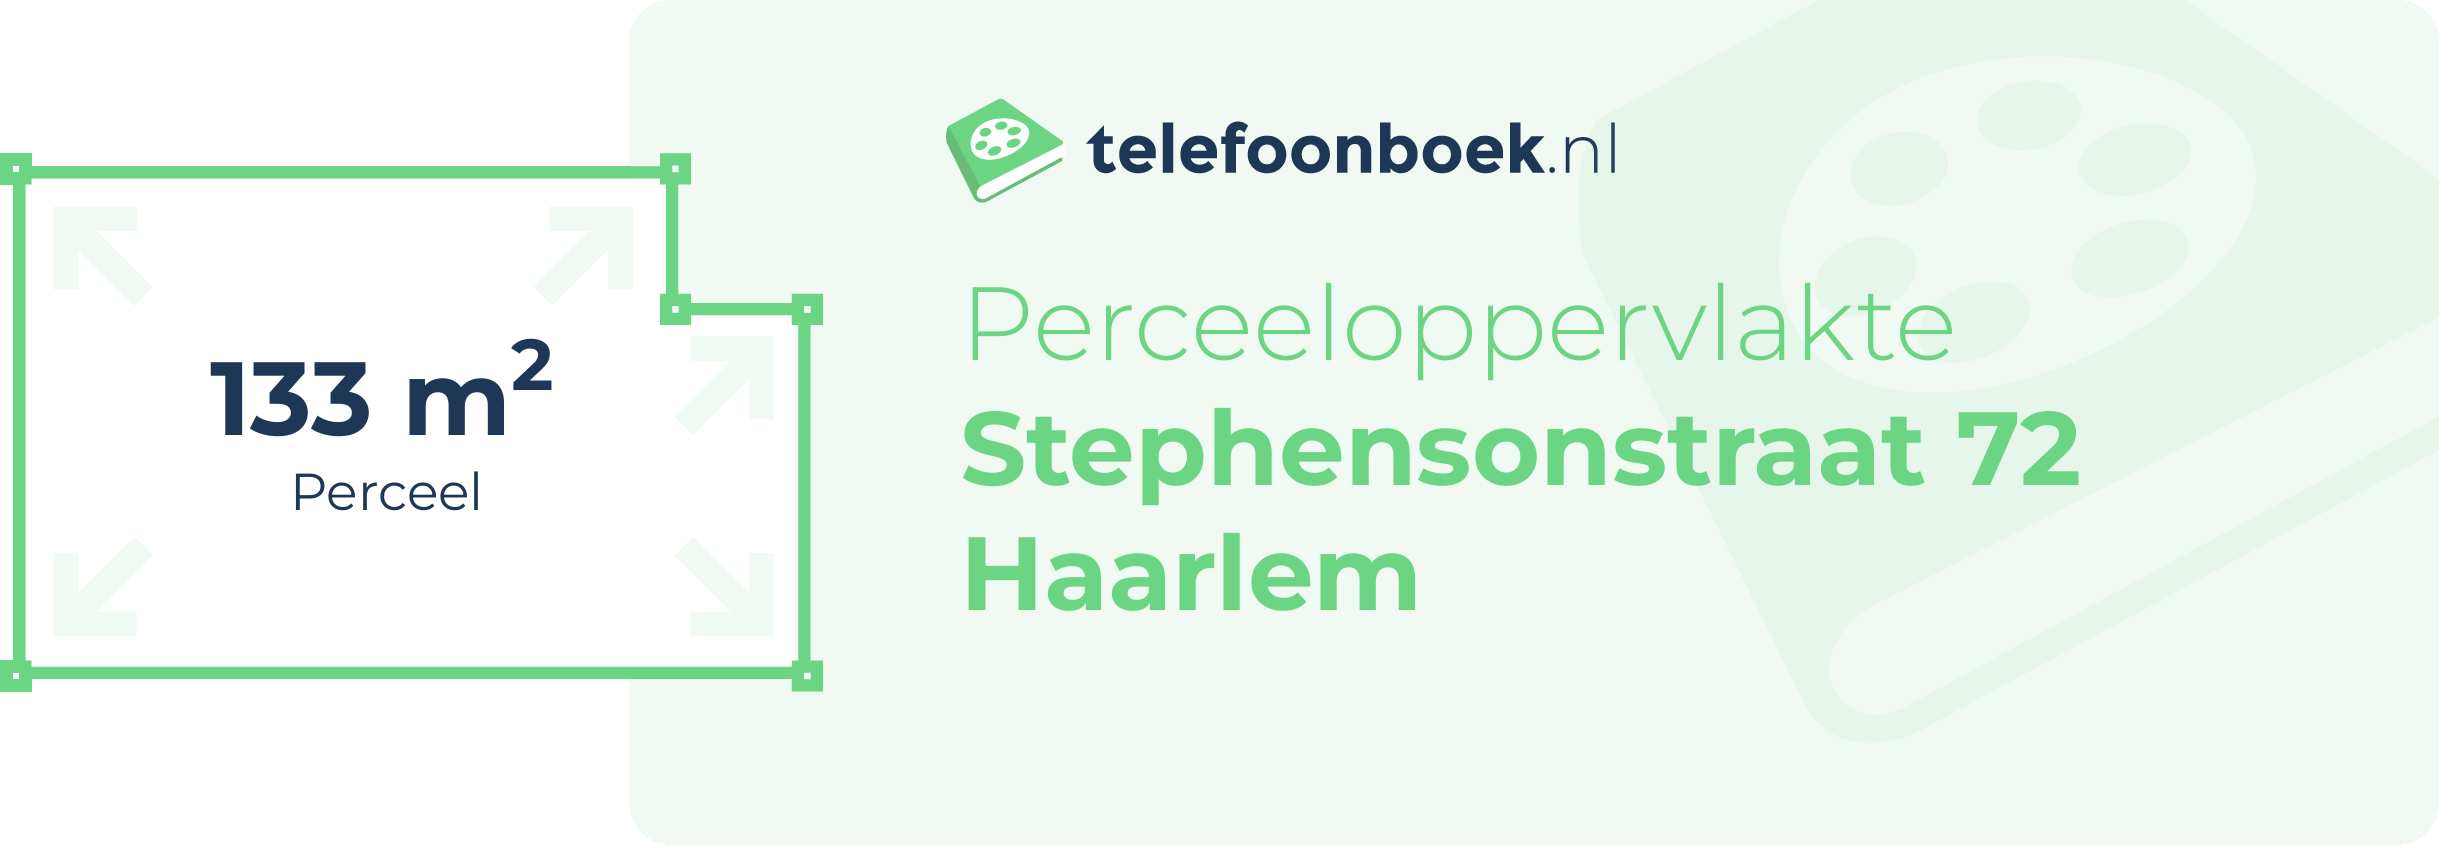 Perceeloppervlakte Stephensonstraat 72 Haarlem